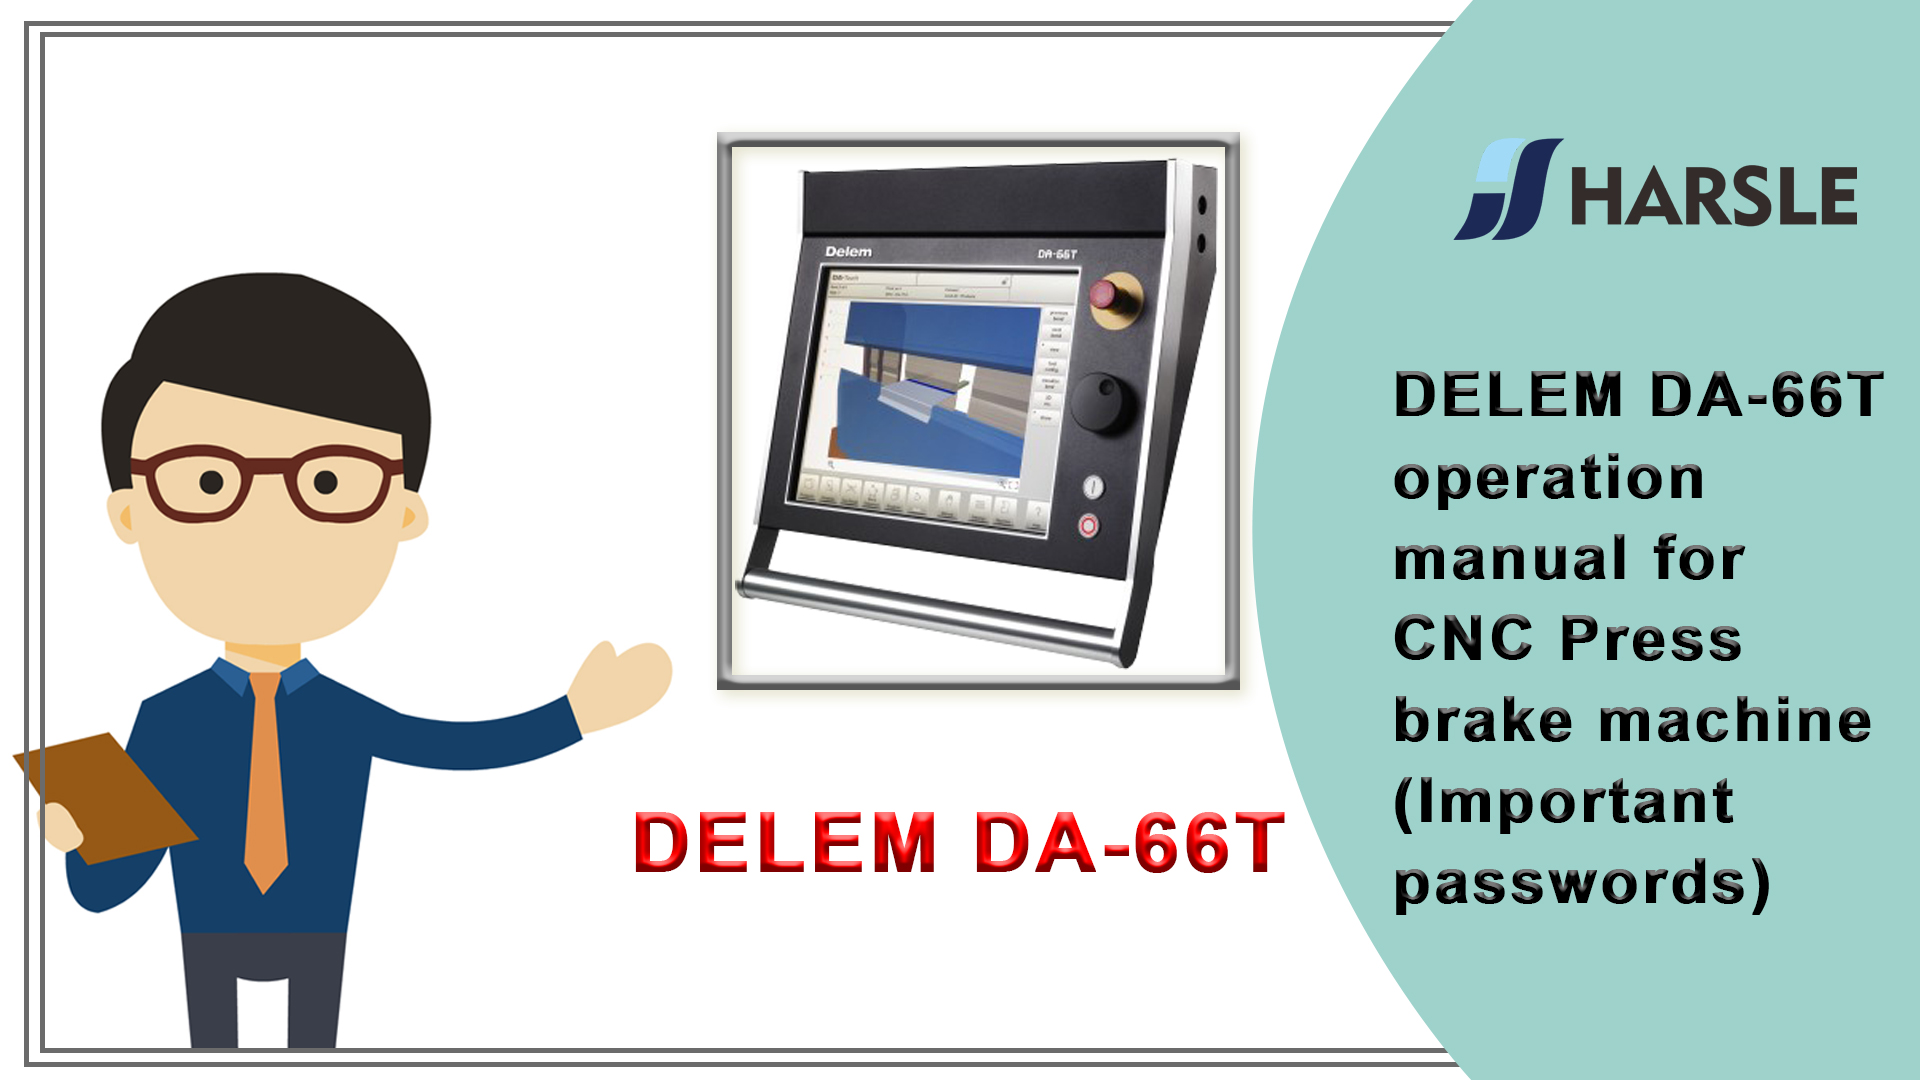 DELEM DA-66T bedieningshandleiding voor CNC-kantpersmachine (belangrijke wachtwoorden)